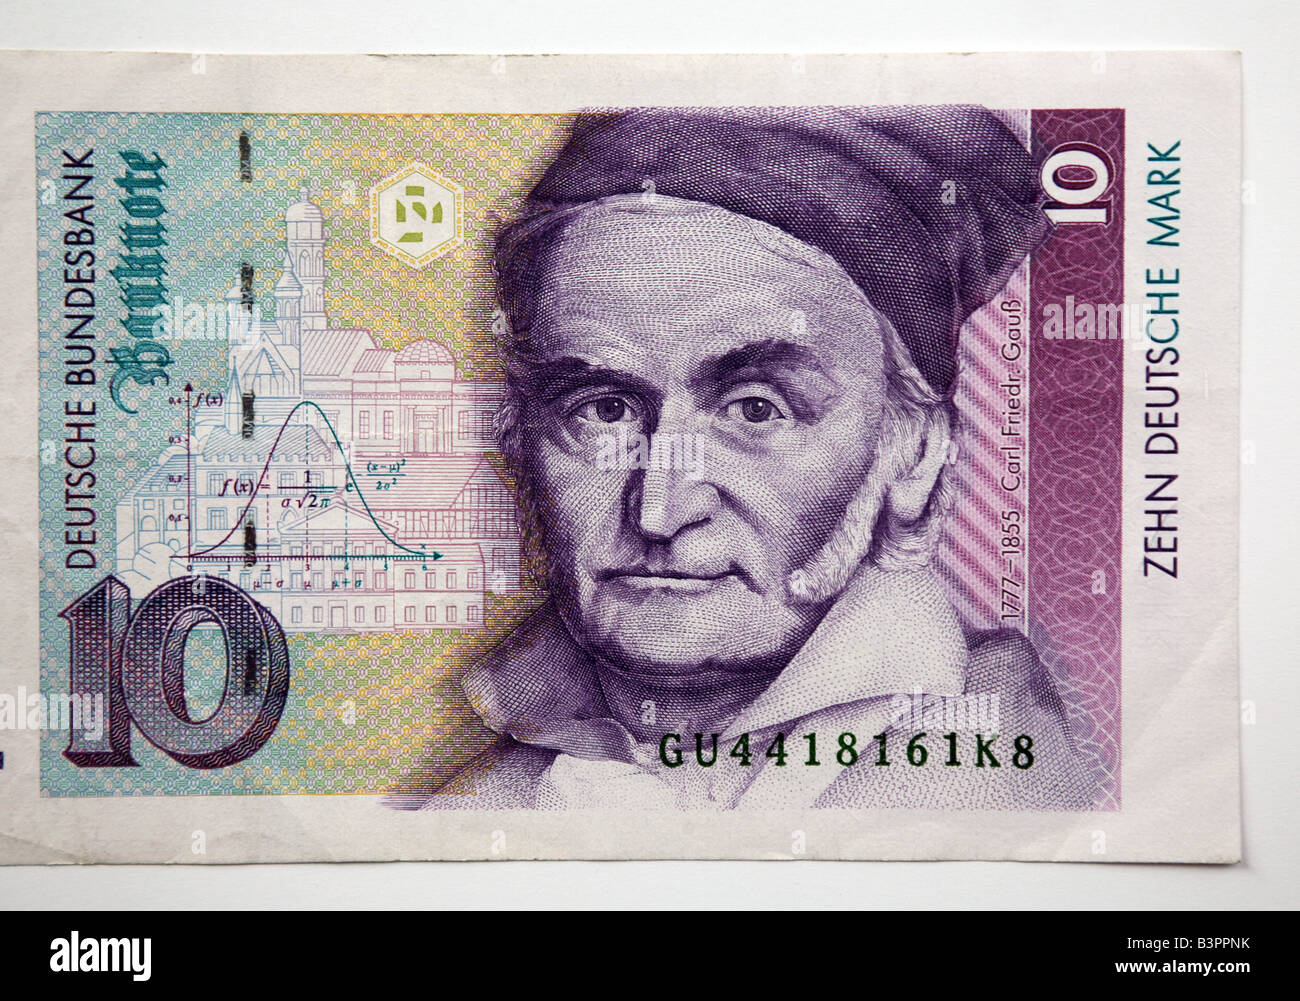 Nahaufnahme von einer traditionellen deutschen 10 zehn Deutsche Mark-banknote  Stockfotografie - Alamy